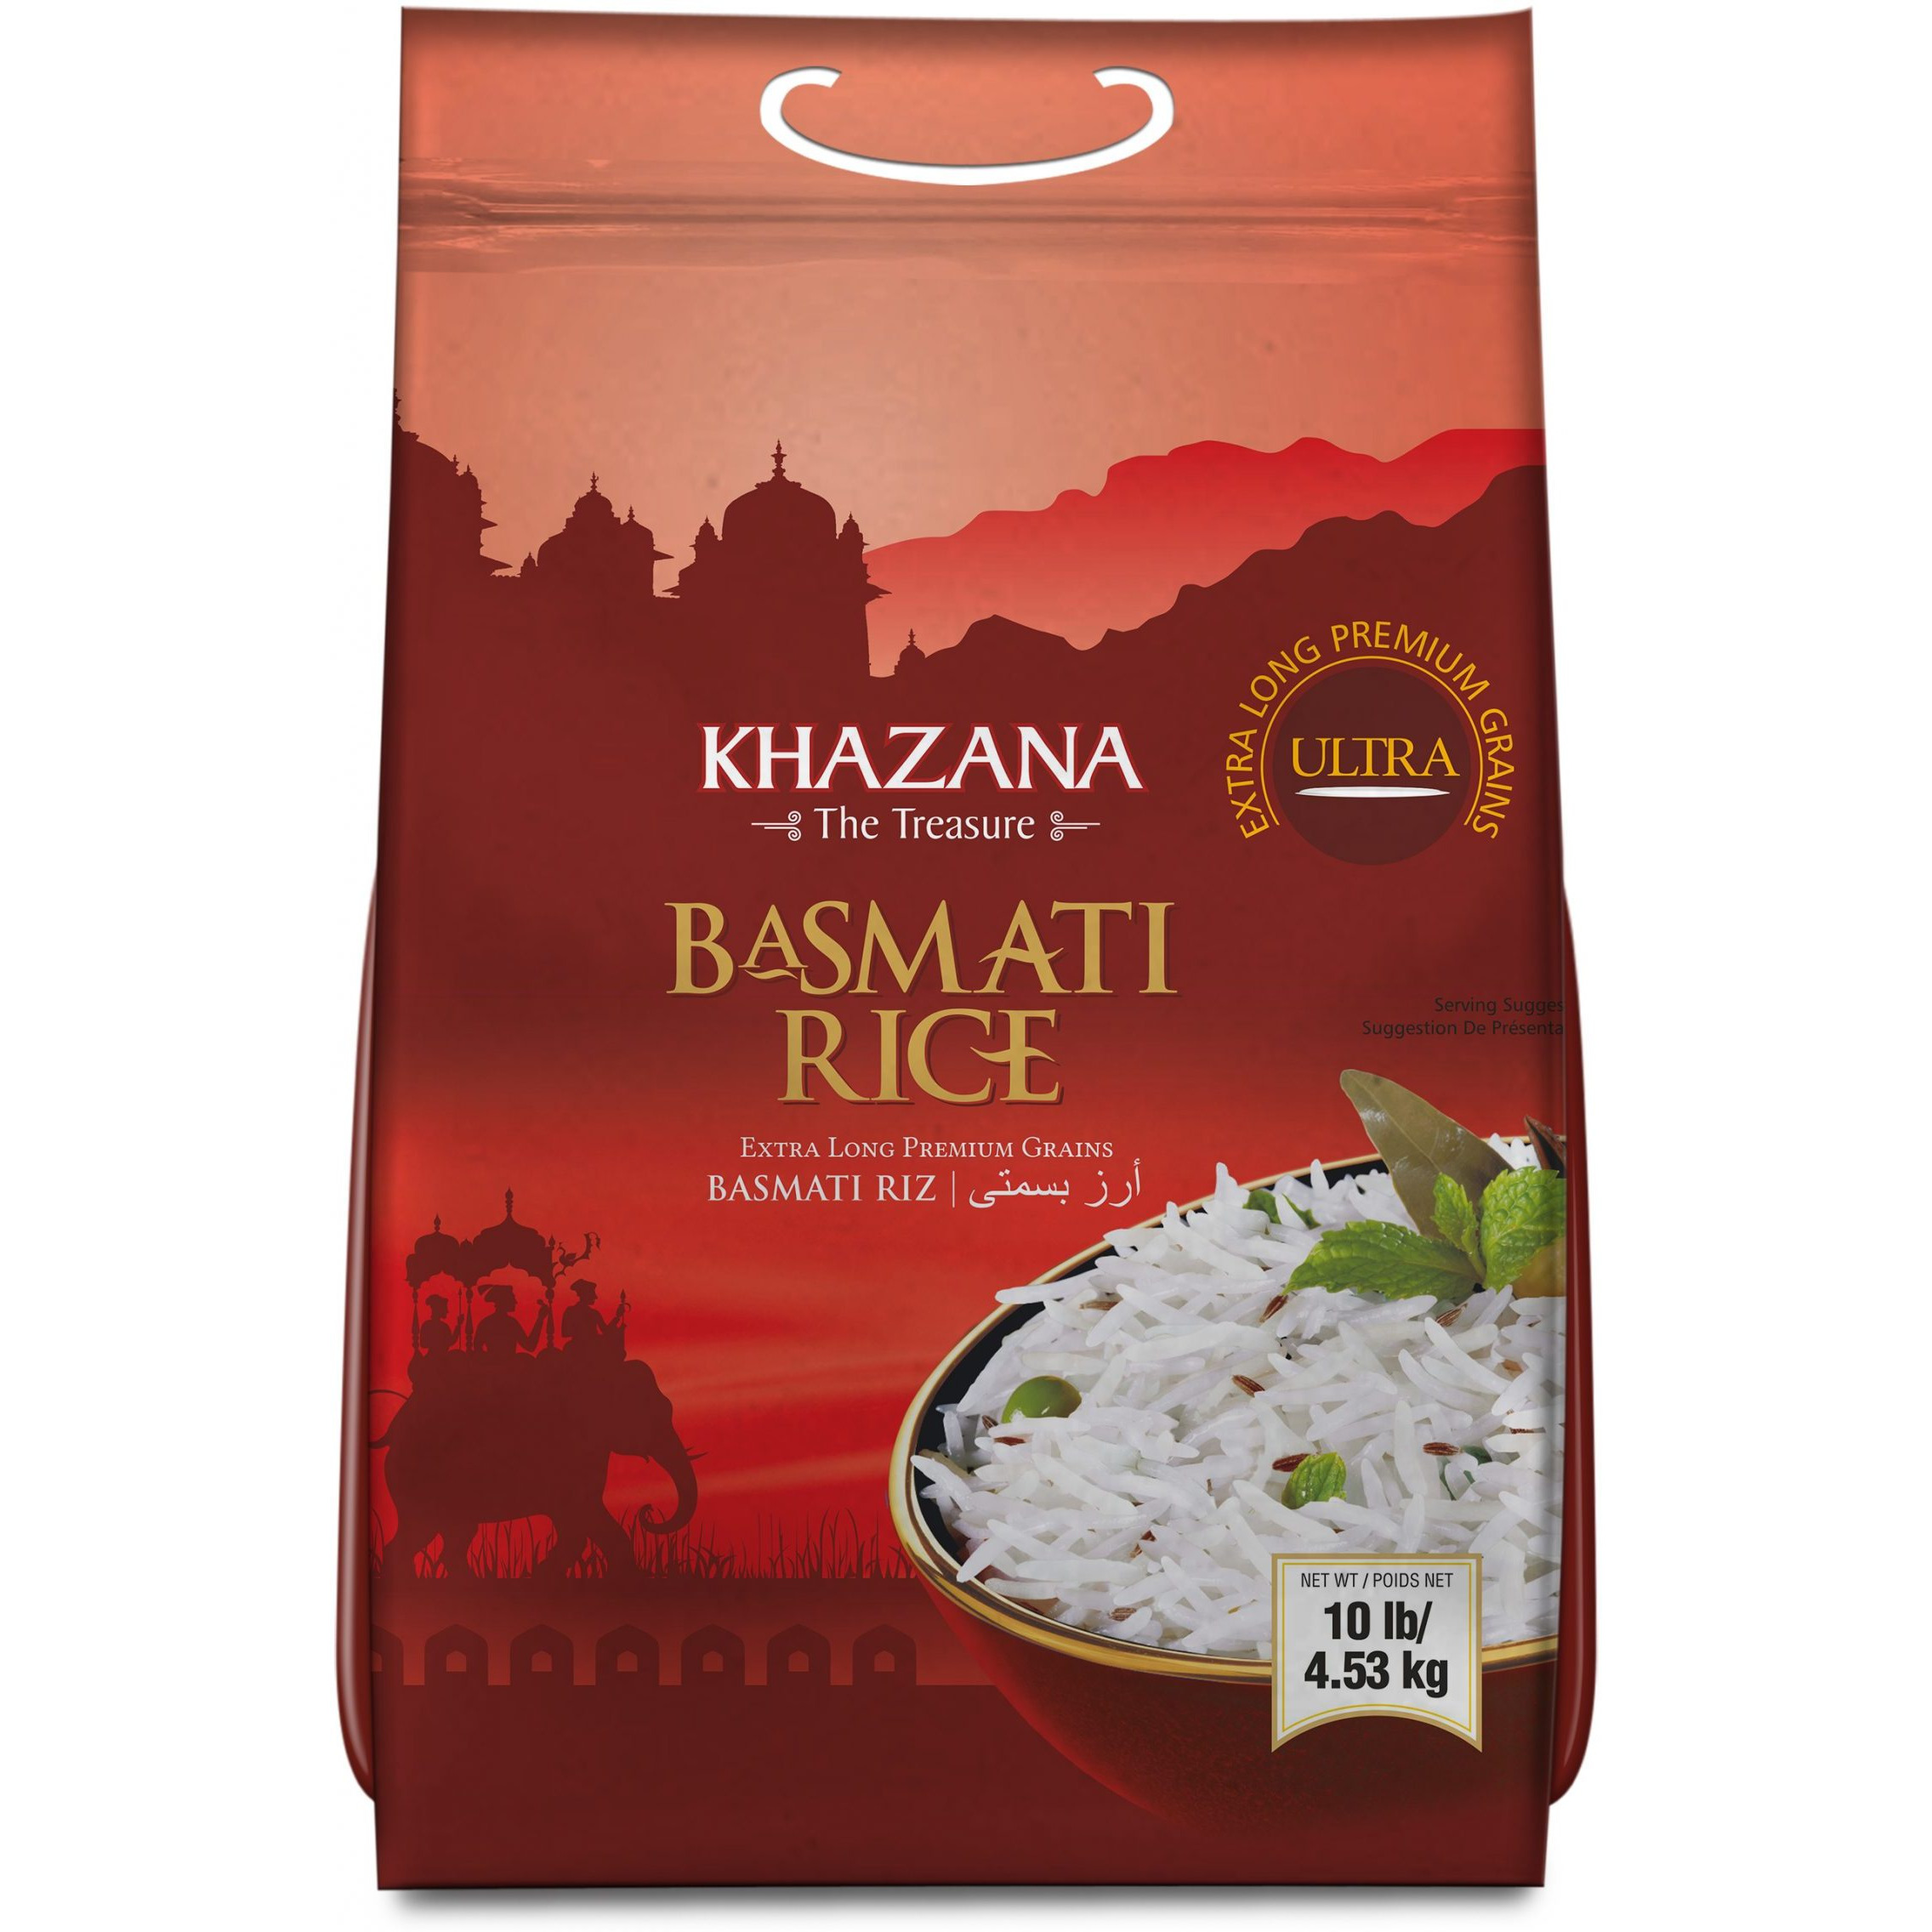 Khazana Ultra Basmati Rice Red Bag - 10 Lb (4.5 Kg)